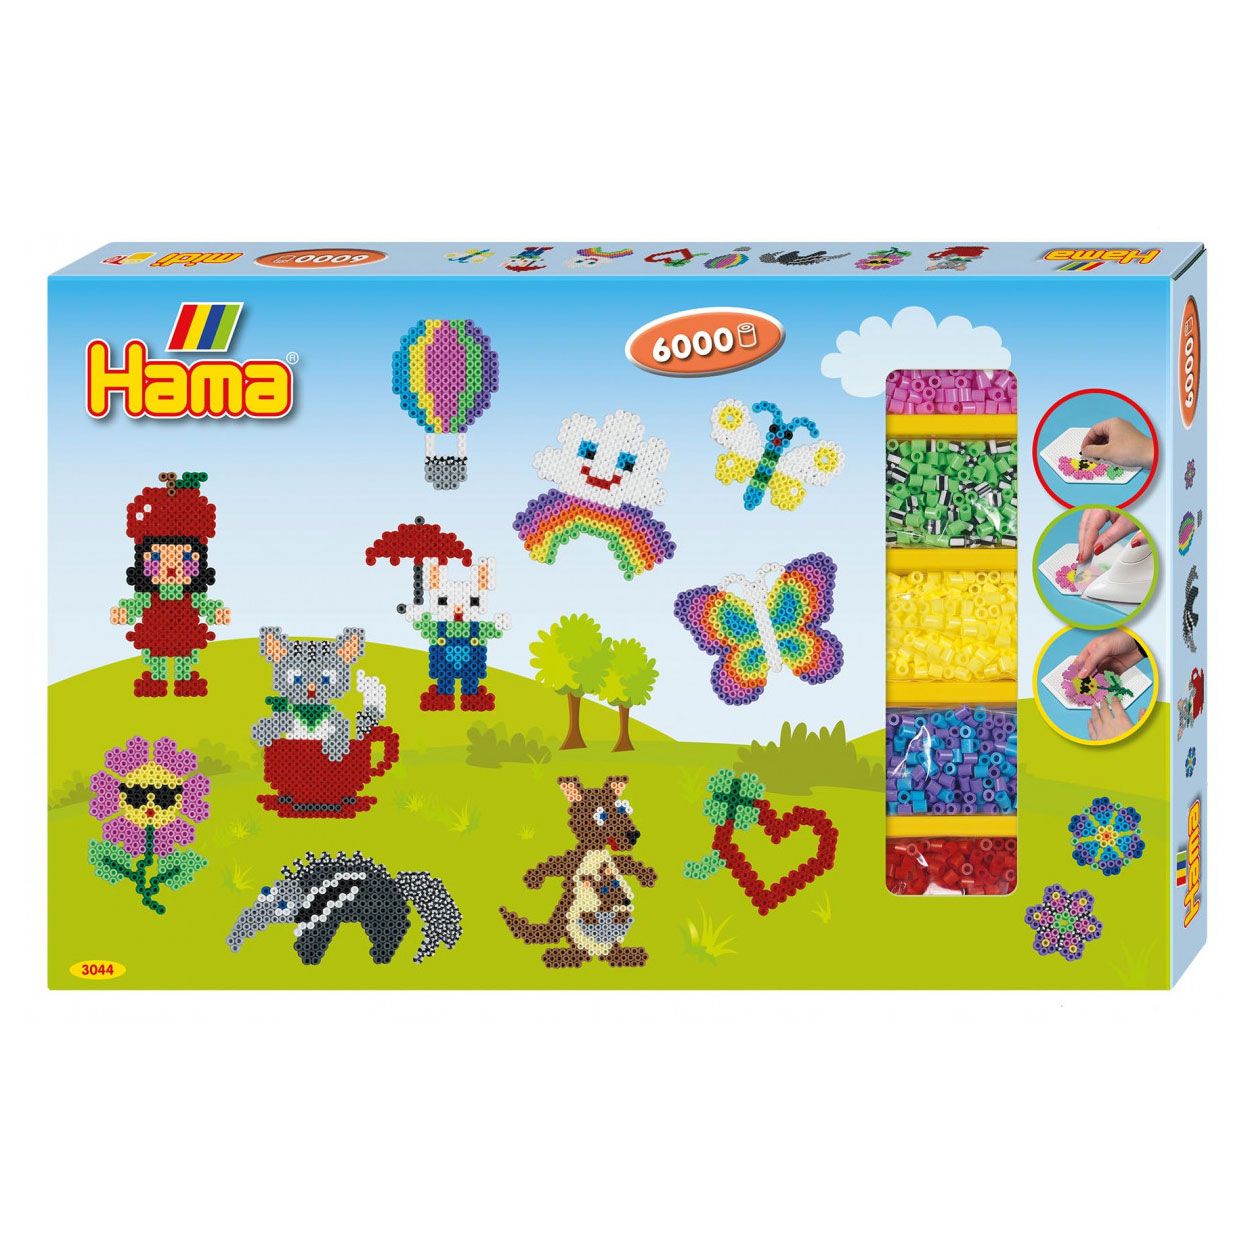 - Set Hama 6000 pcs. Toys Summer, | Bead Ironing Thimble